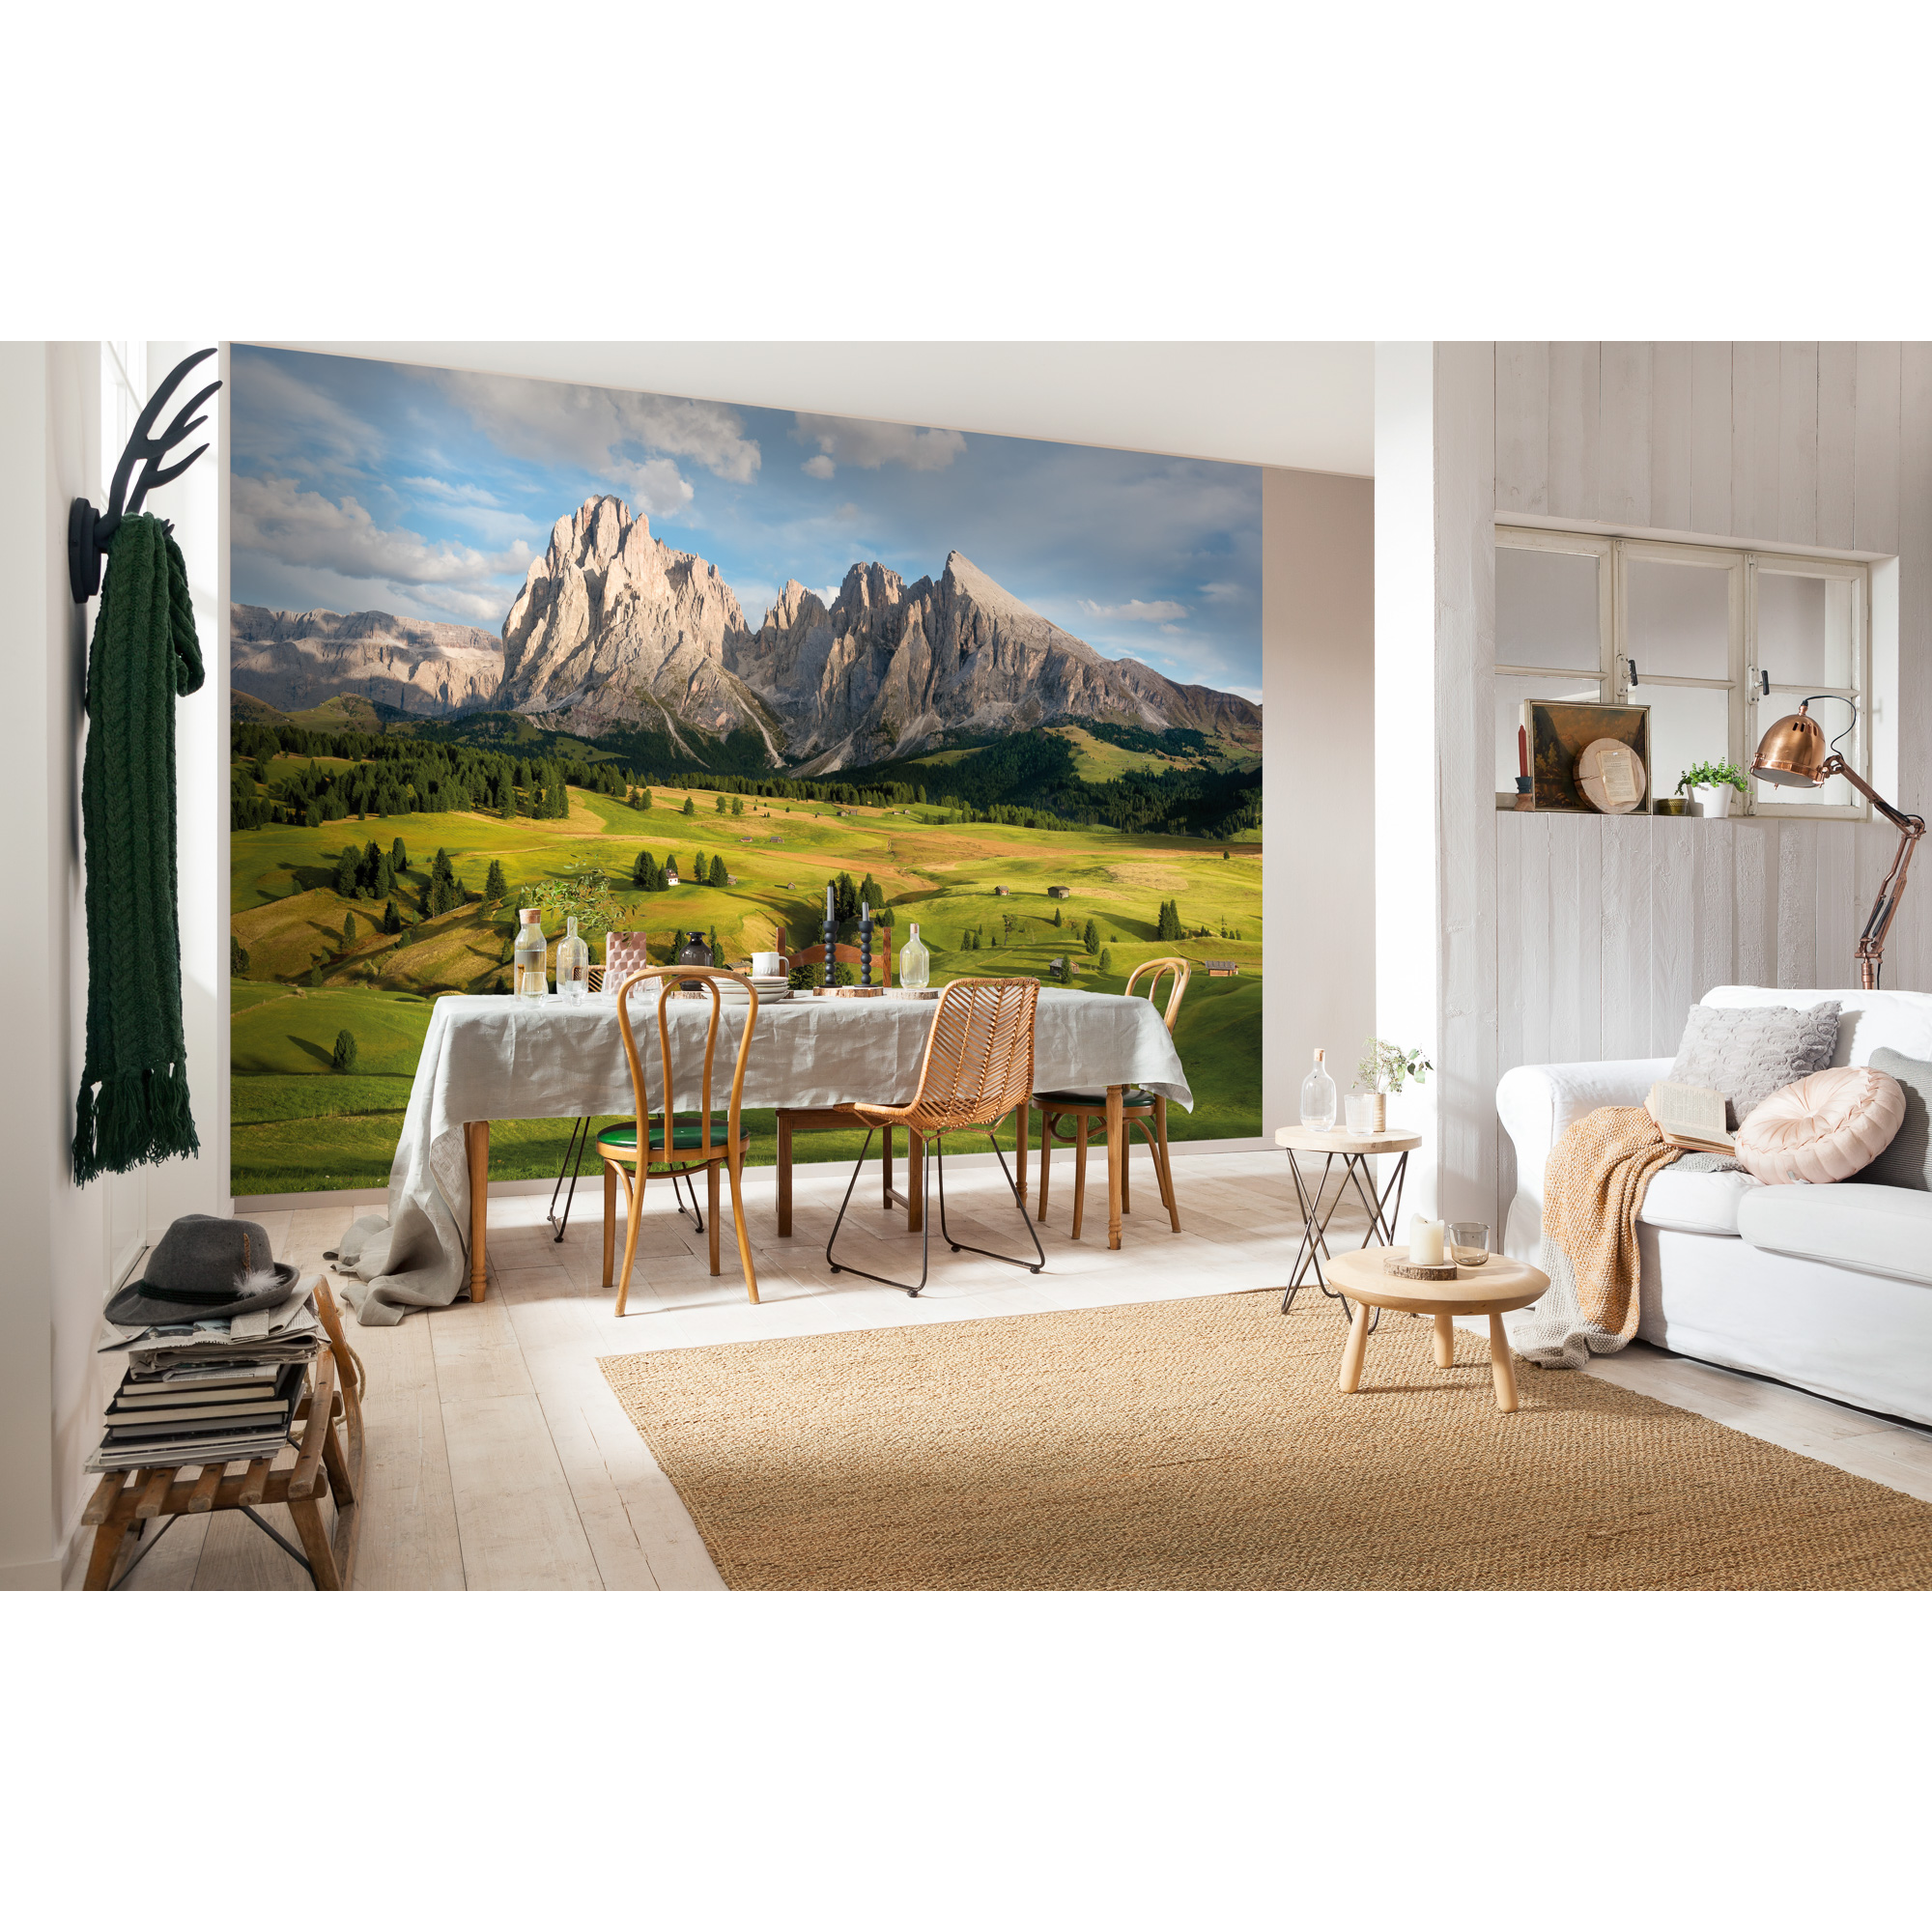 Fototapete 'Alpen' 368 x 254 cm + product picture